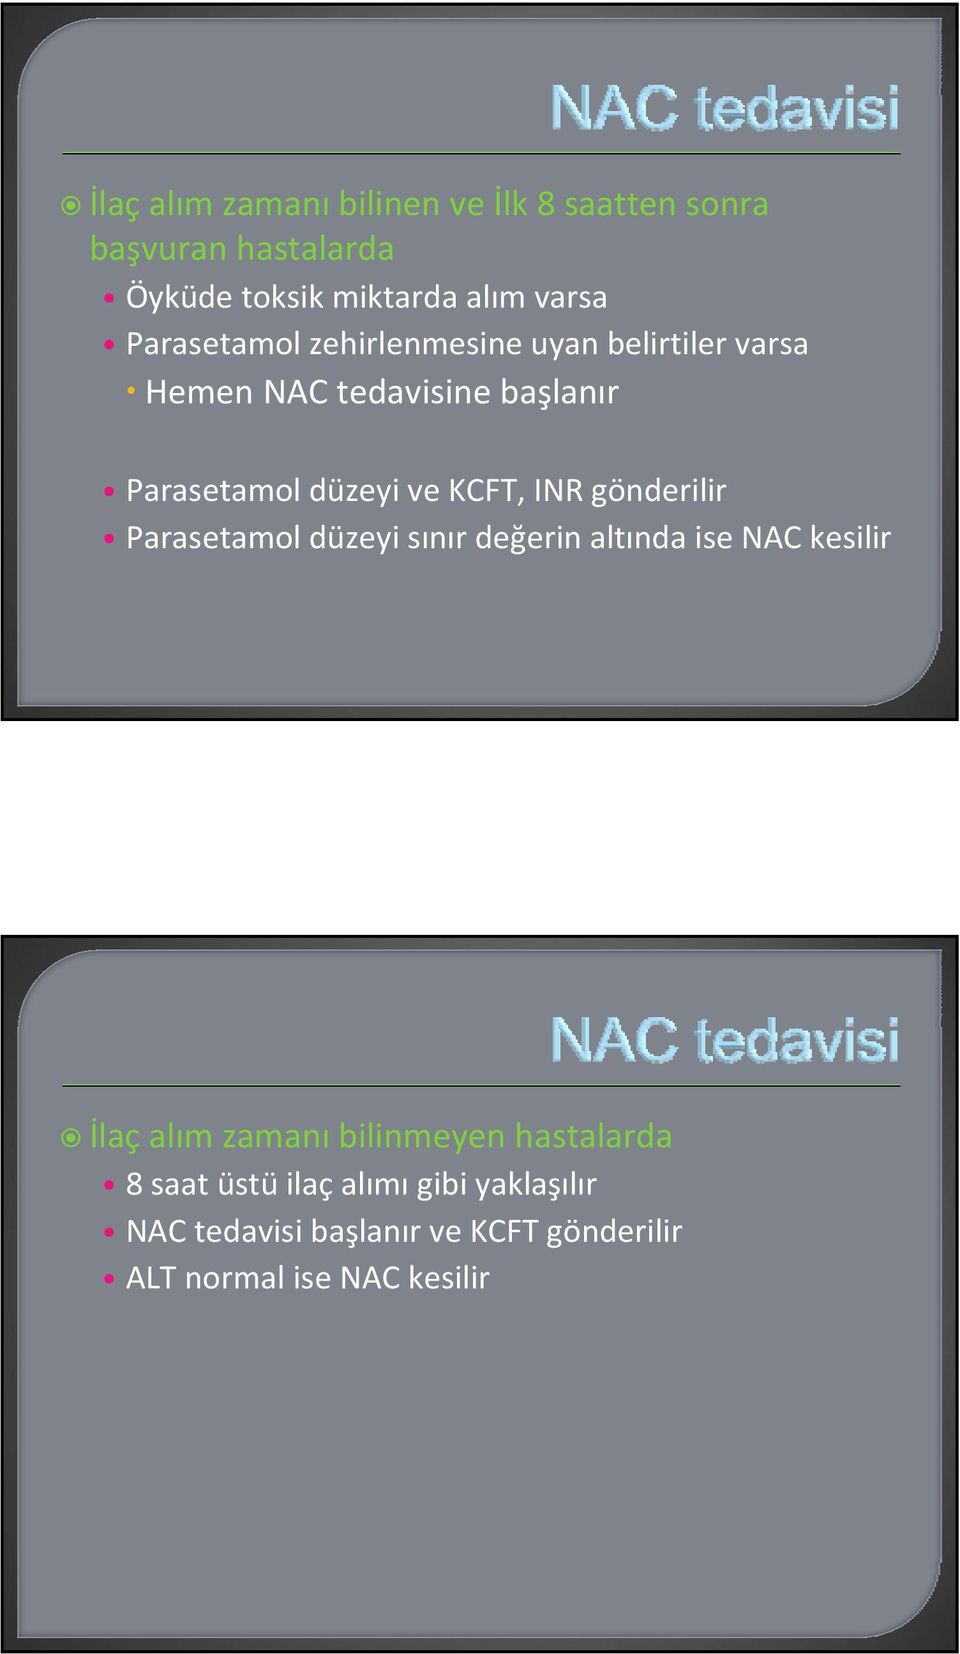 INR gönderilir Parasetamol düzeyi sınır değerin altında ise NAC kesilir İlaç alım zamanı bilinmeyen